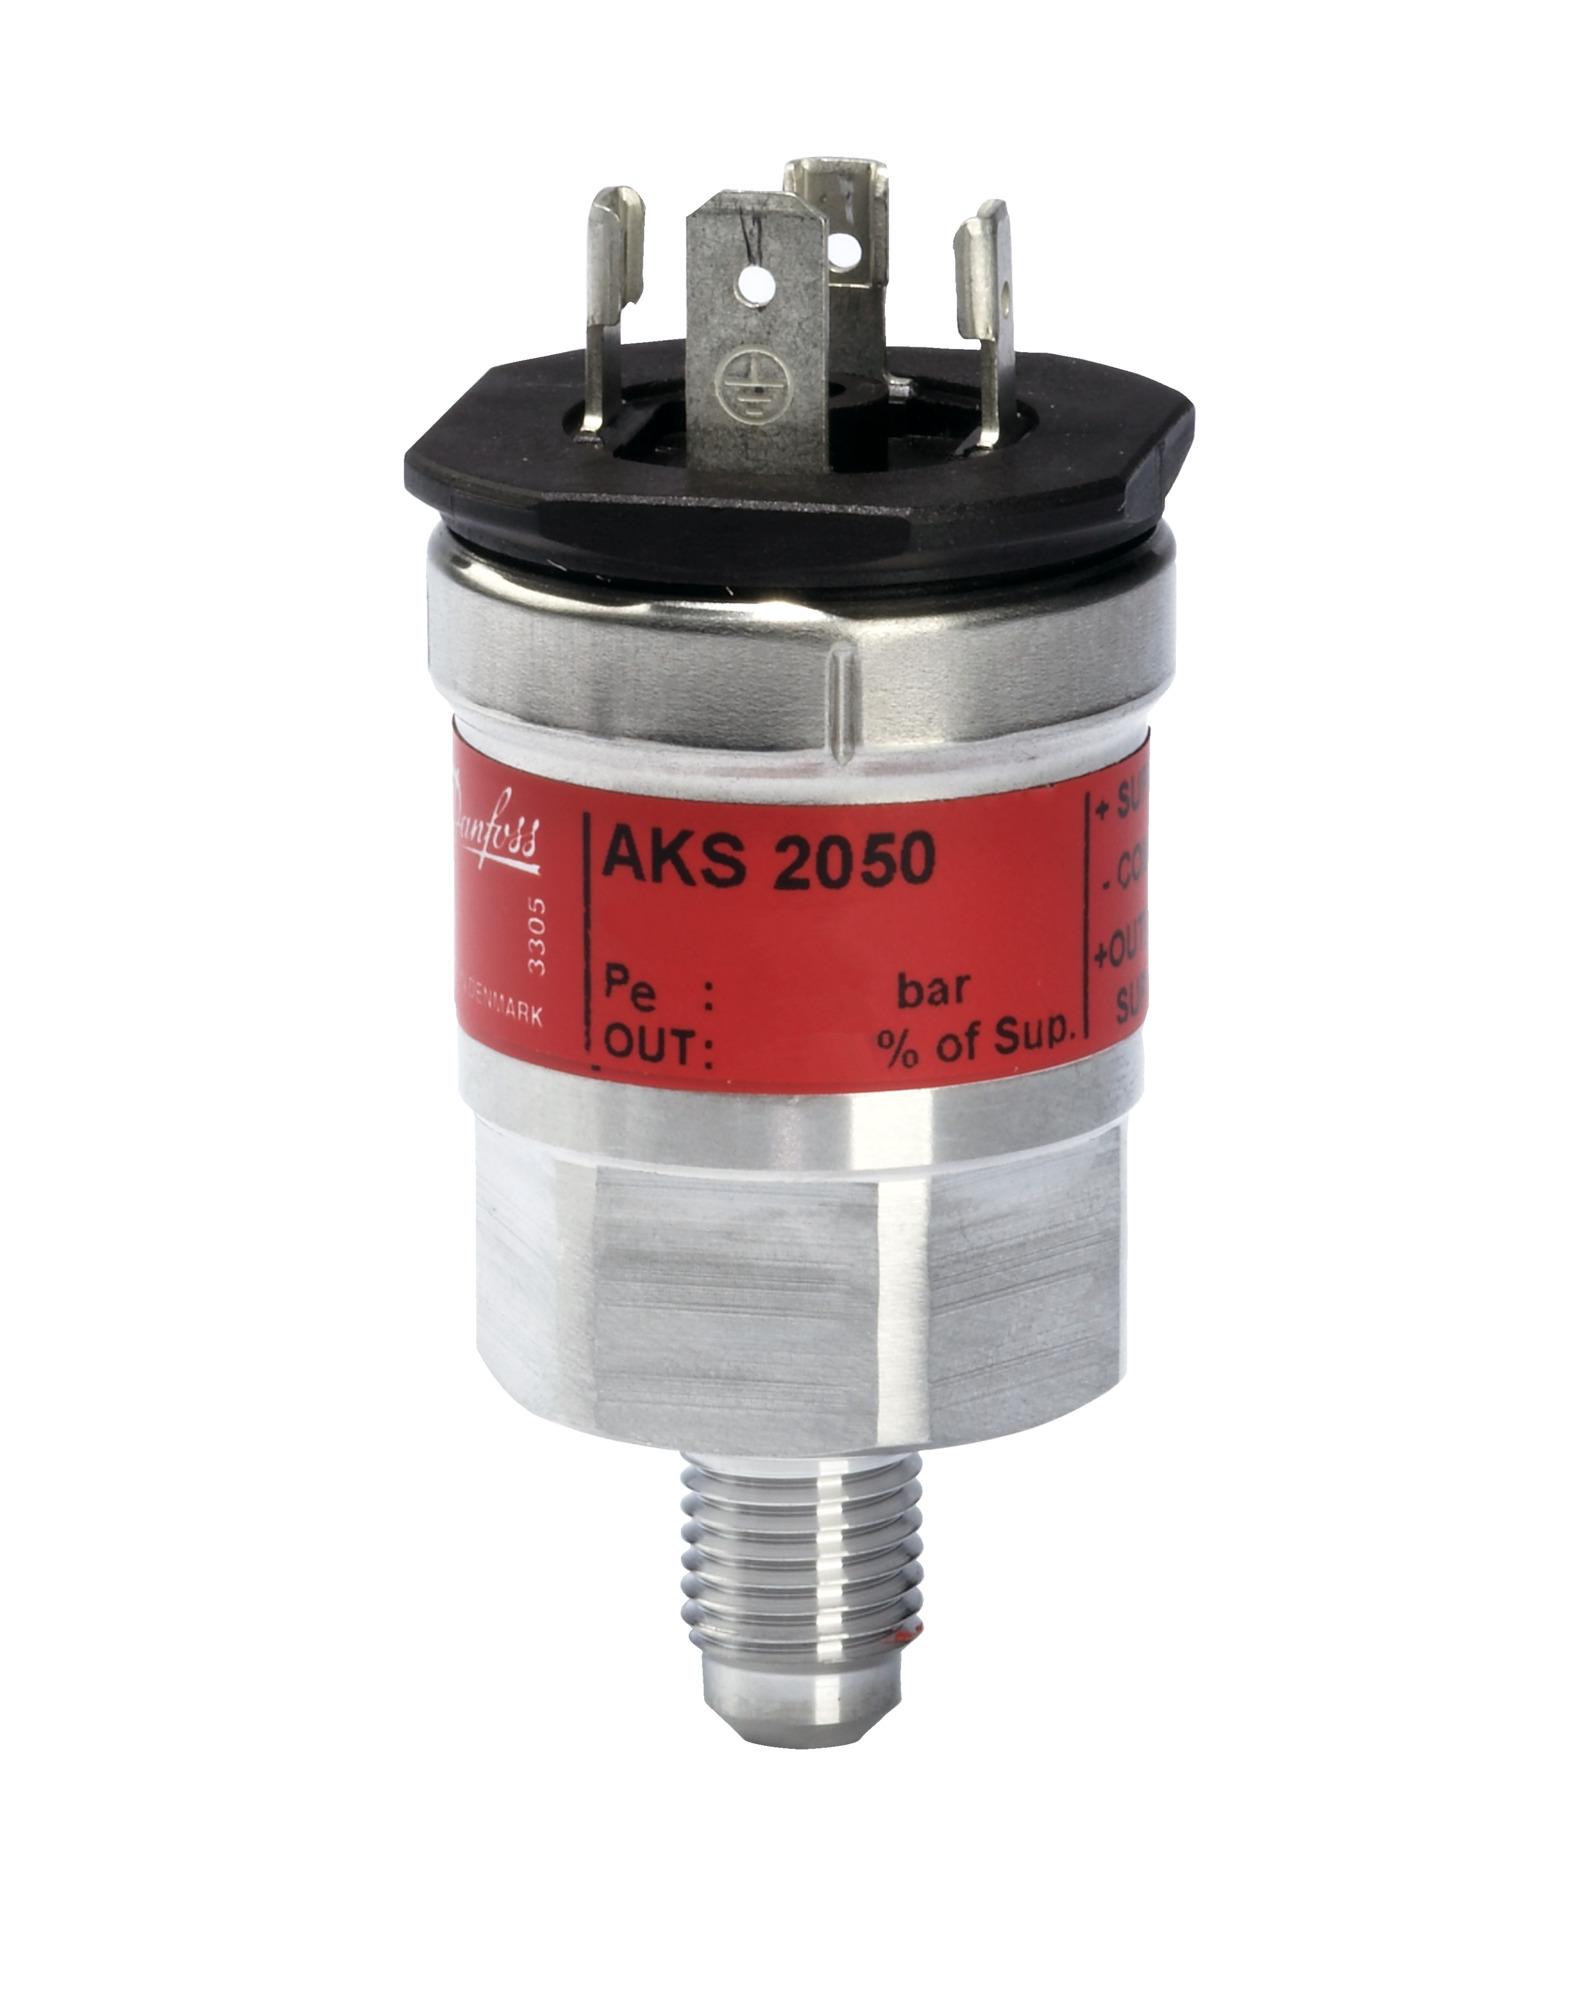 Danfoss AKS 2050 -1-159 Bar Pressure Transmitter for CO2